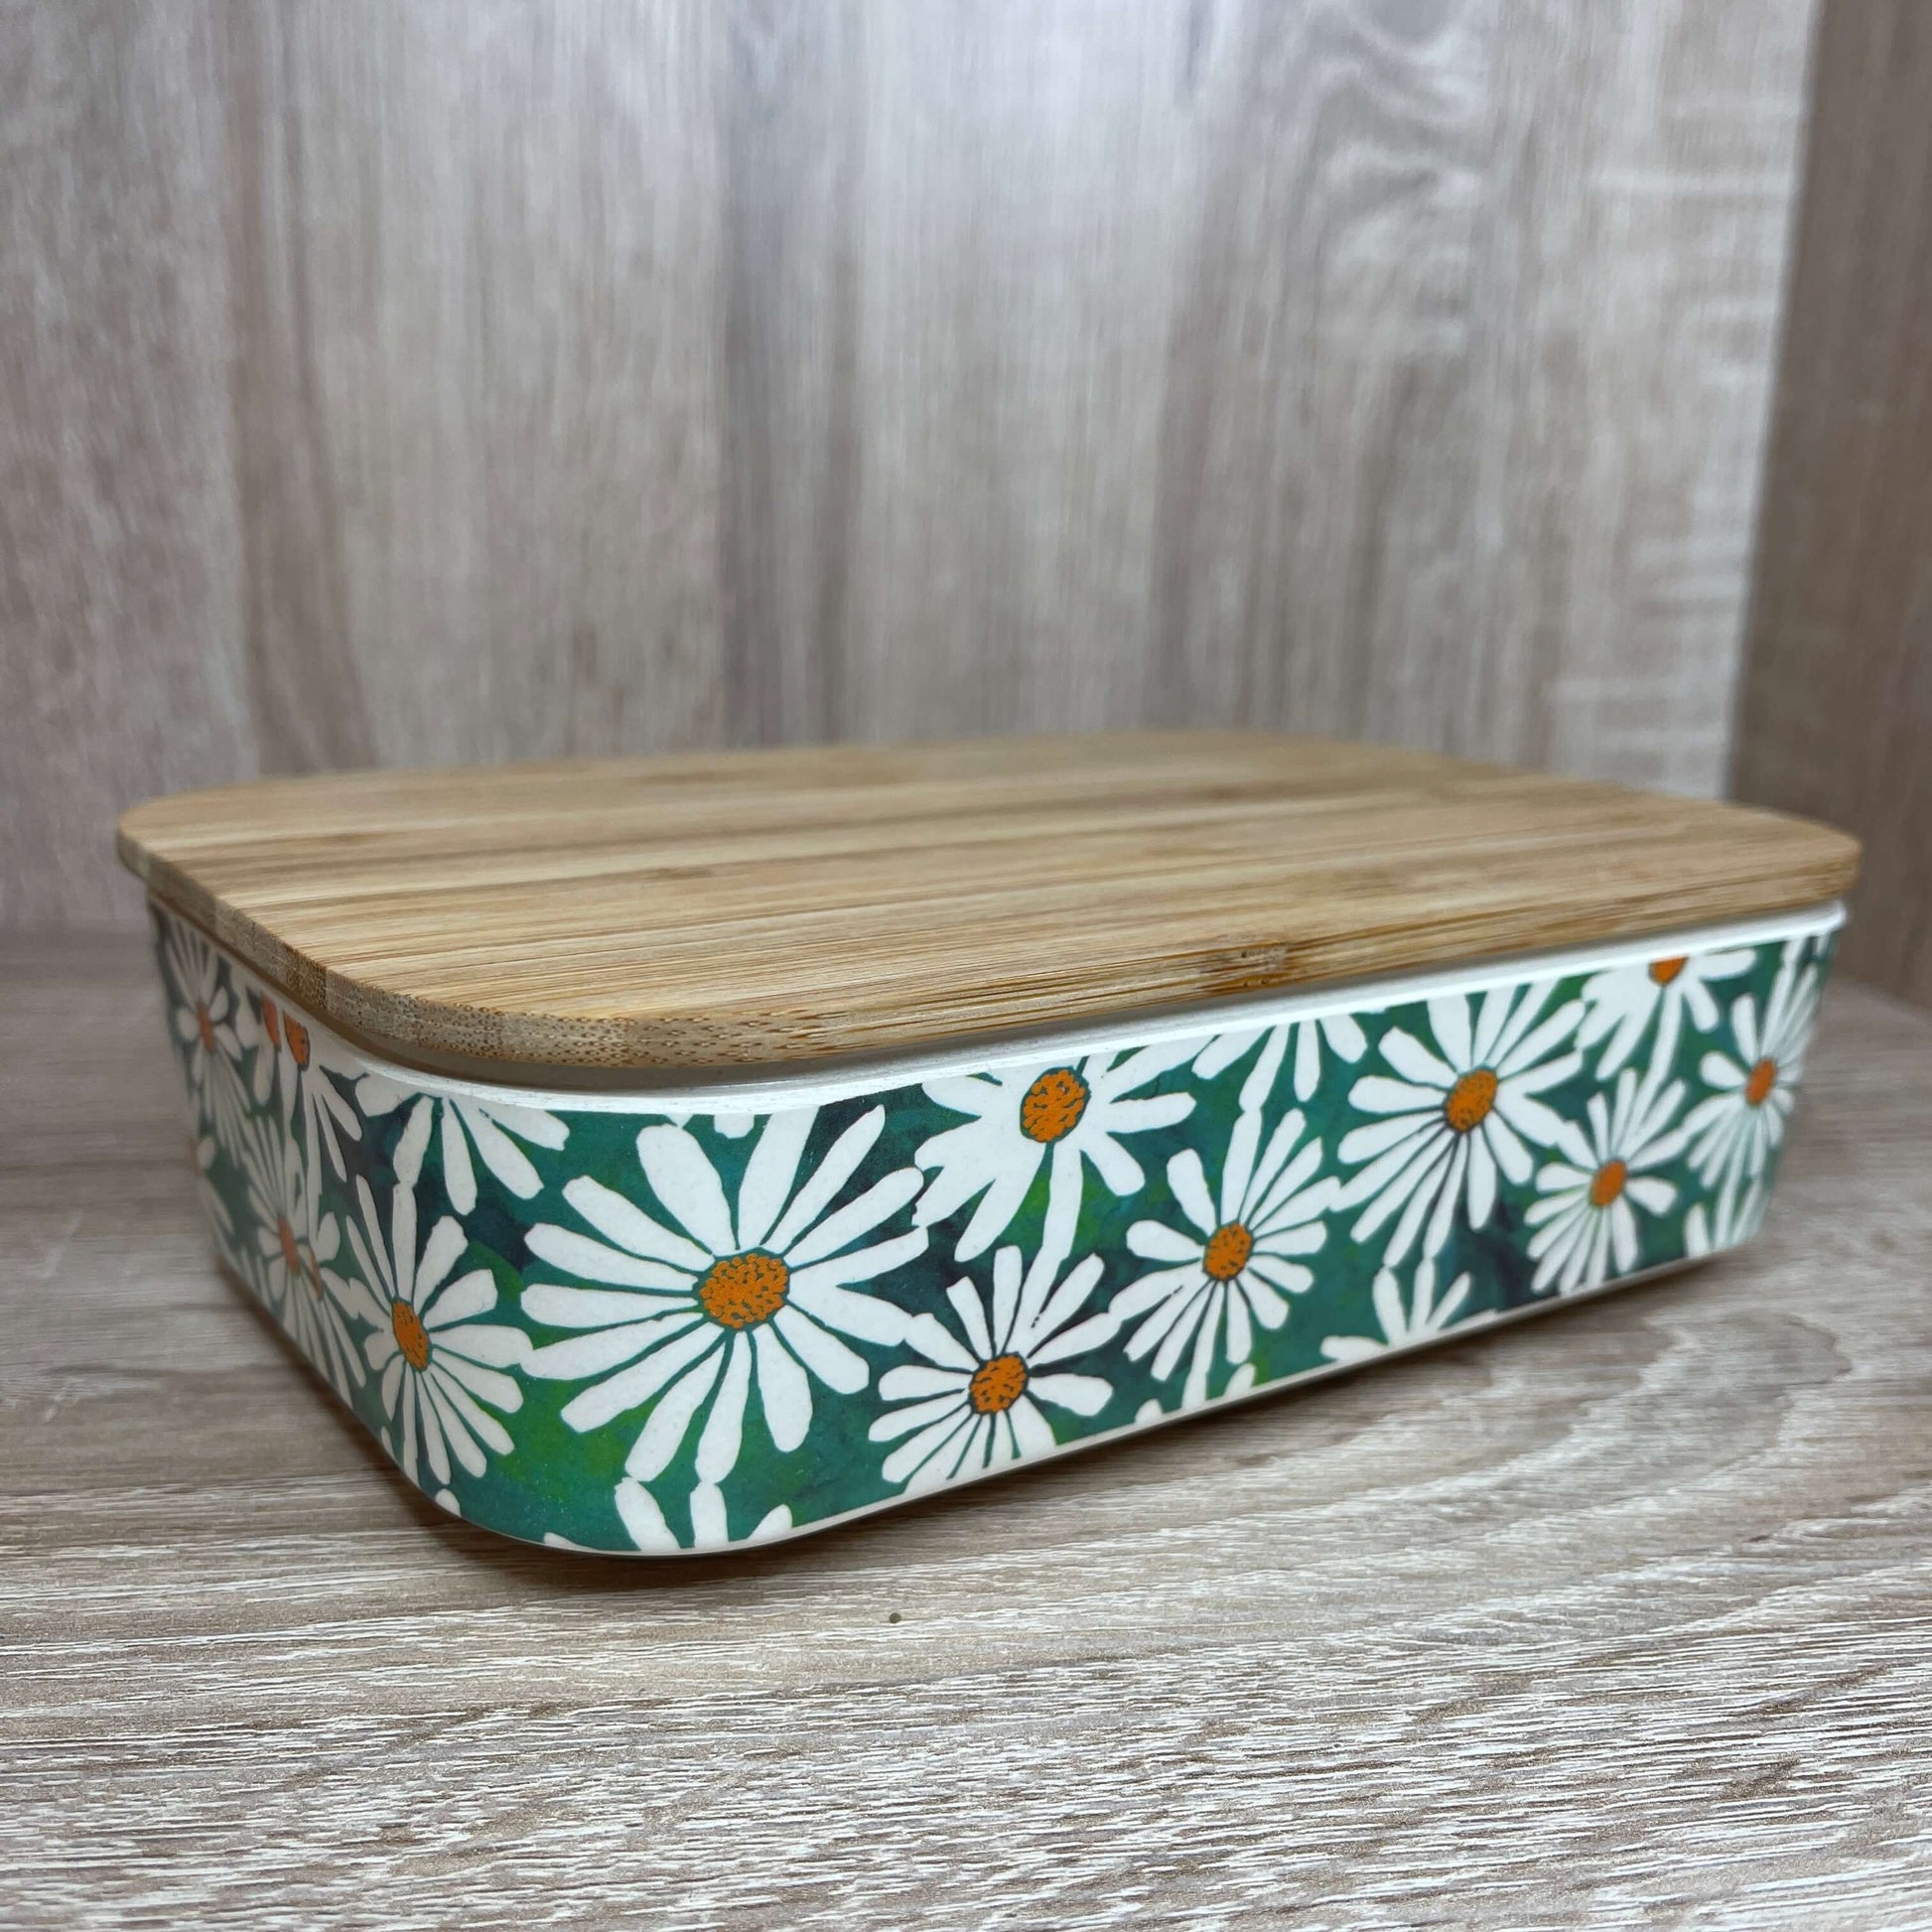 Bamboo Daisy lunch box.